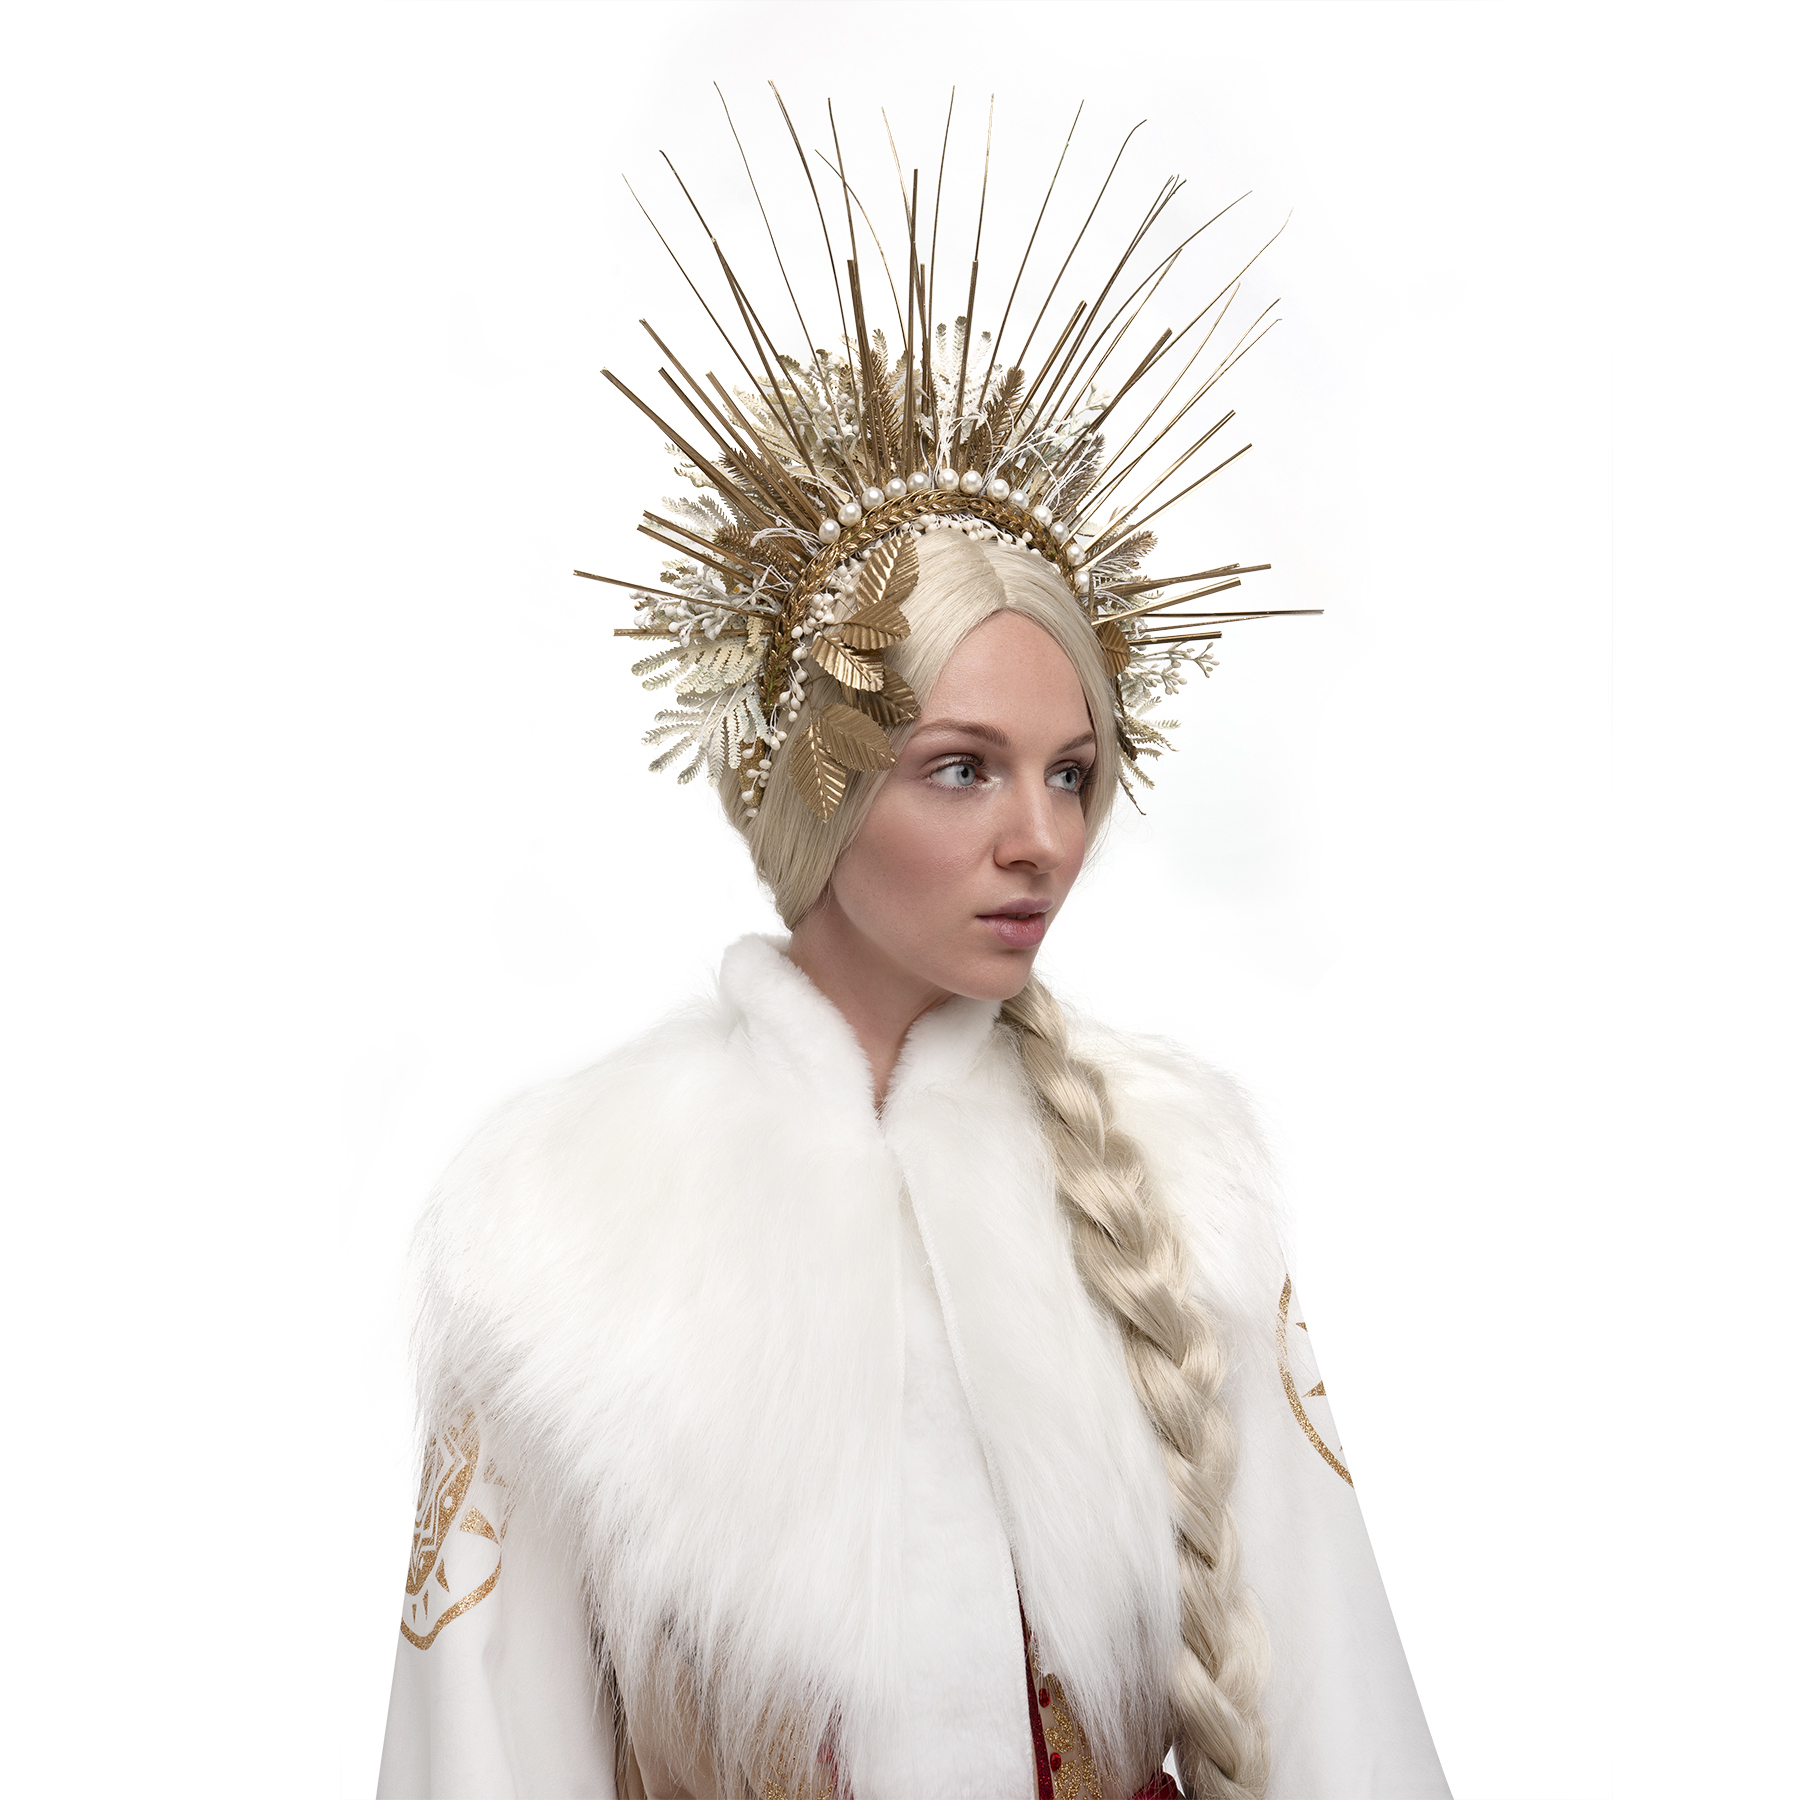 Snow Maiden Wig Blond